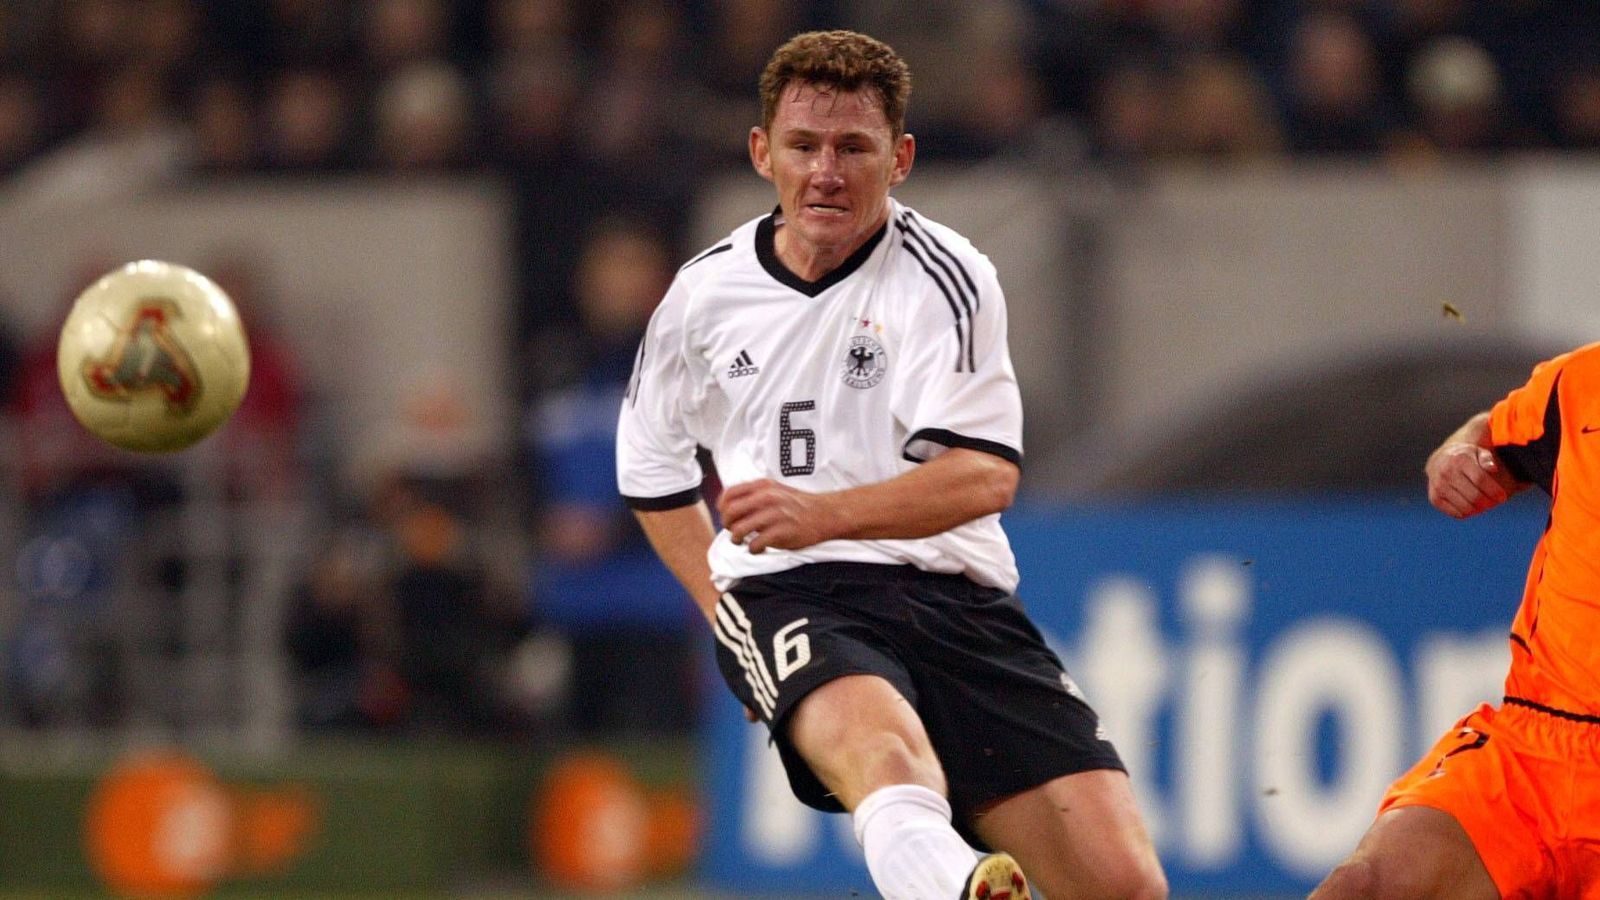 
                <strong>Slawomir "Paul" Freier, 19 Länderspiele</strong><br>
                Der Ex-Profi des VfL Bochum gab 2002 sein Länderspieldebüt als Zweitliga-Spieler. Alle anderen Länderspiele bestritt er als Bundesliga-Profi.
              